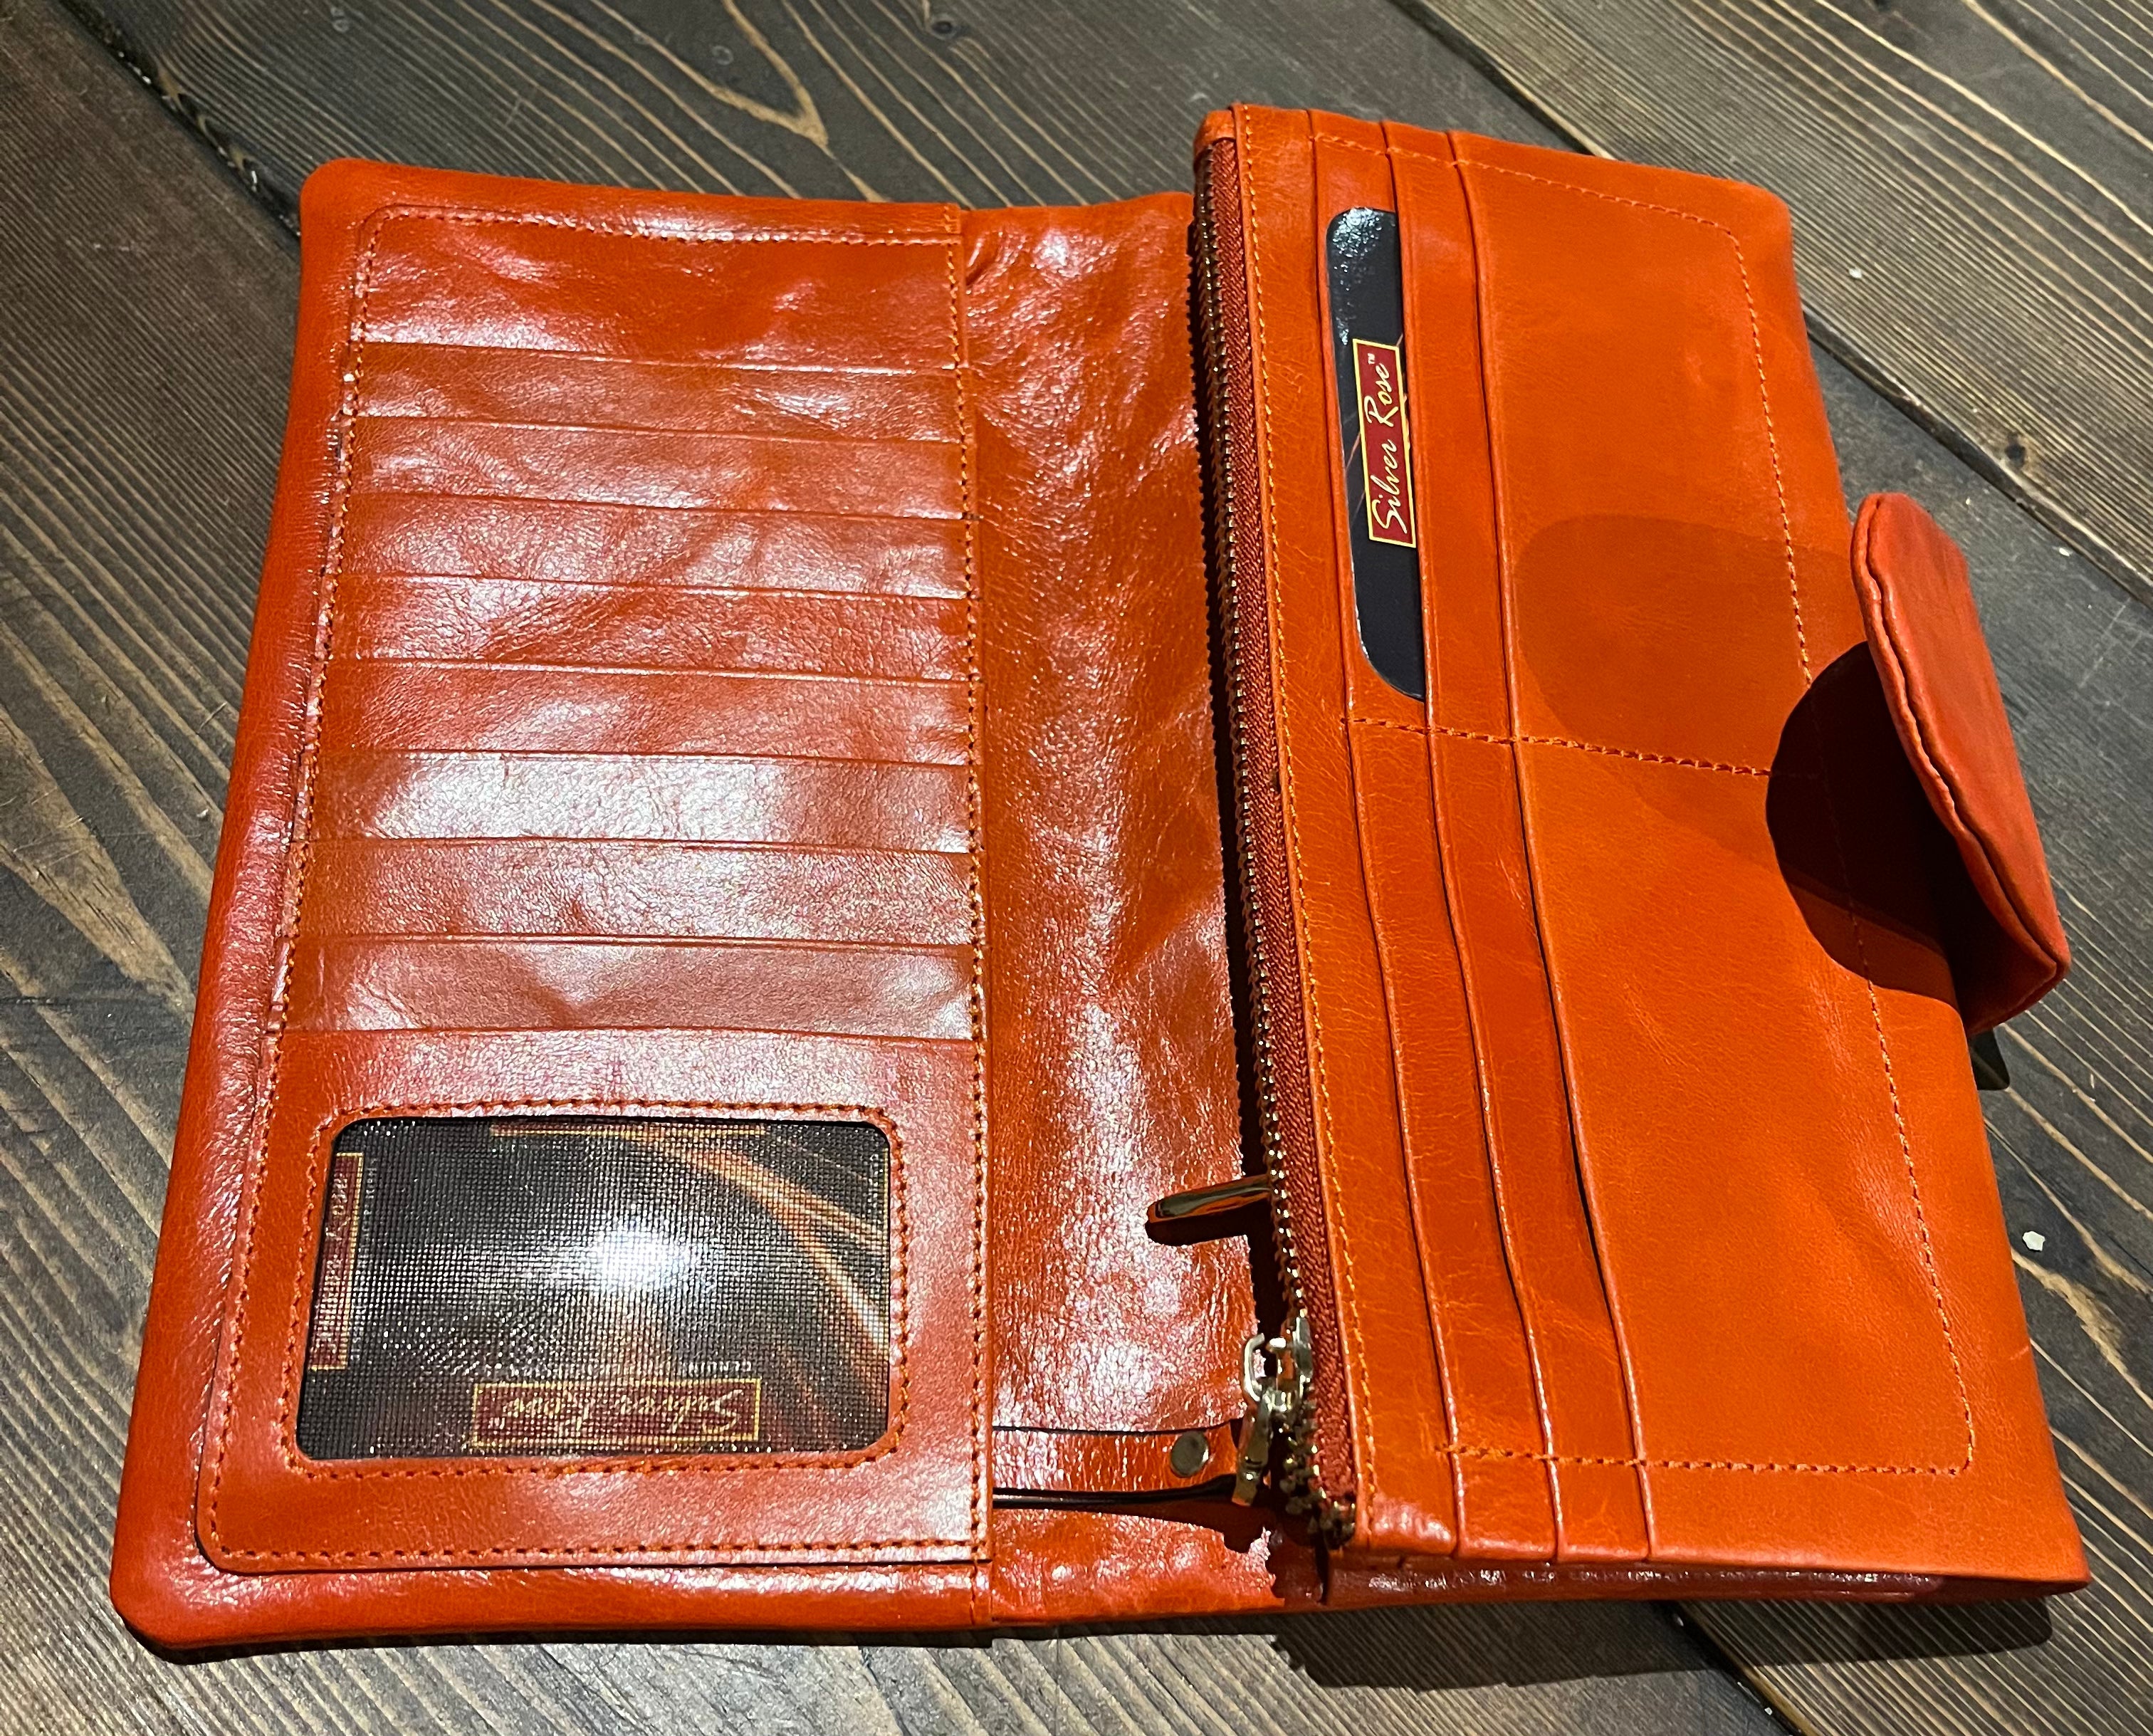 Wenz WL-1463 Leather Clutch Wallets